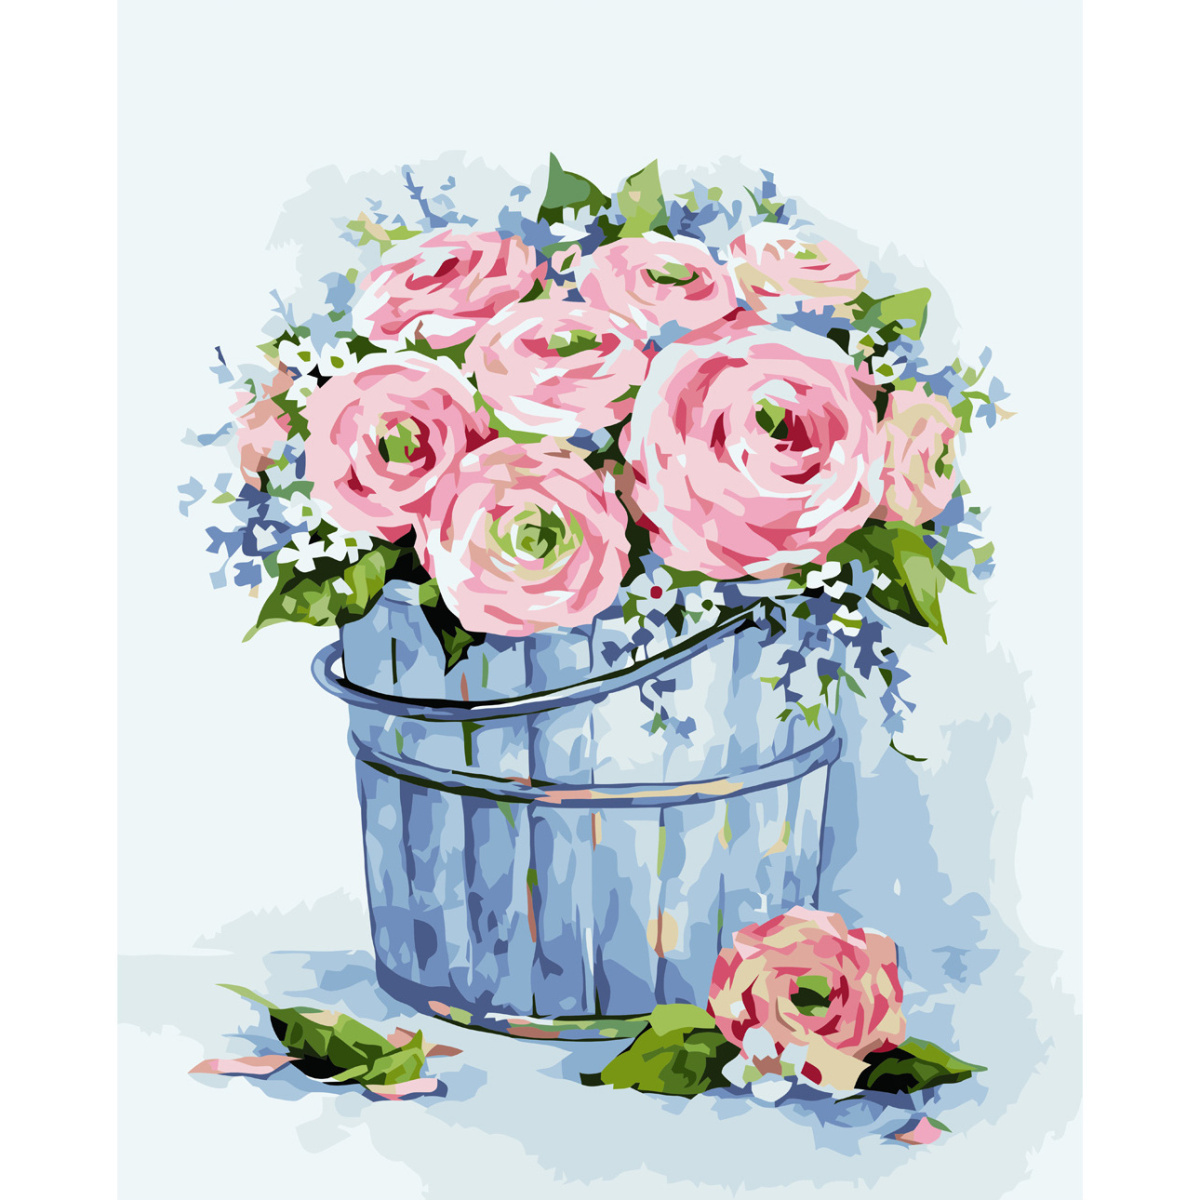 Malen nach Zahlen Strateg PREMIUM Blumenstrauß aus eleganten Rosen mit Lackgröße 40x50 cm VA-3690